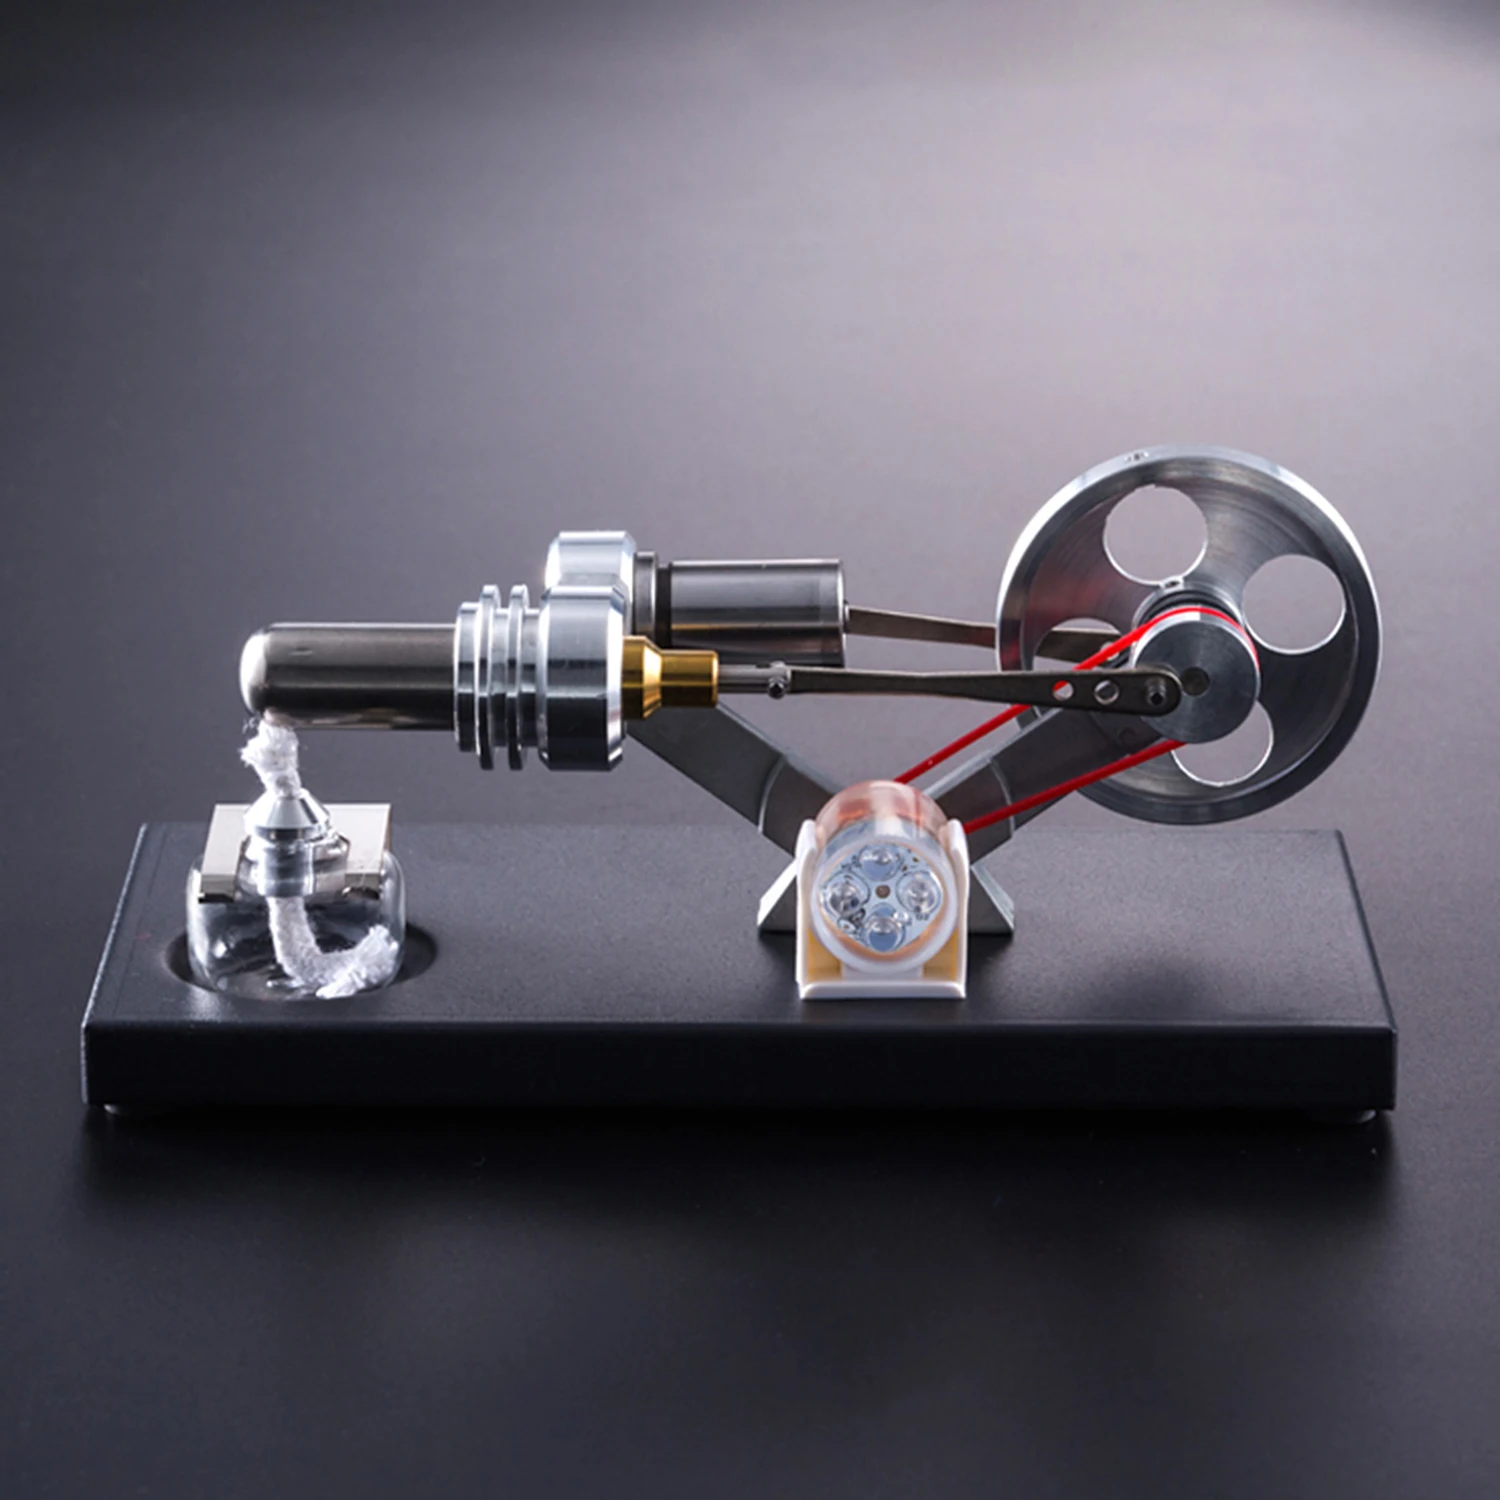 Моторная модель DIY Kit горячий воздух Стирлинг двигатель с 4 шт. светодиодные фонари Электрогенератор физика обучающая игрушка обучающие средства